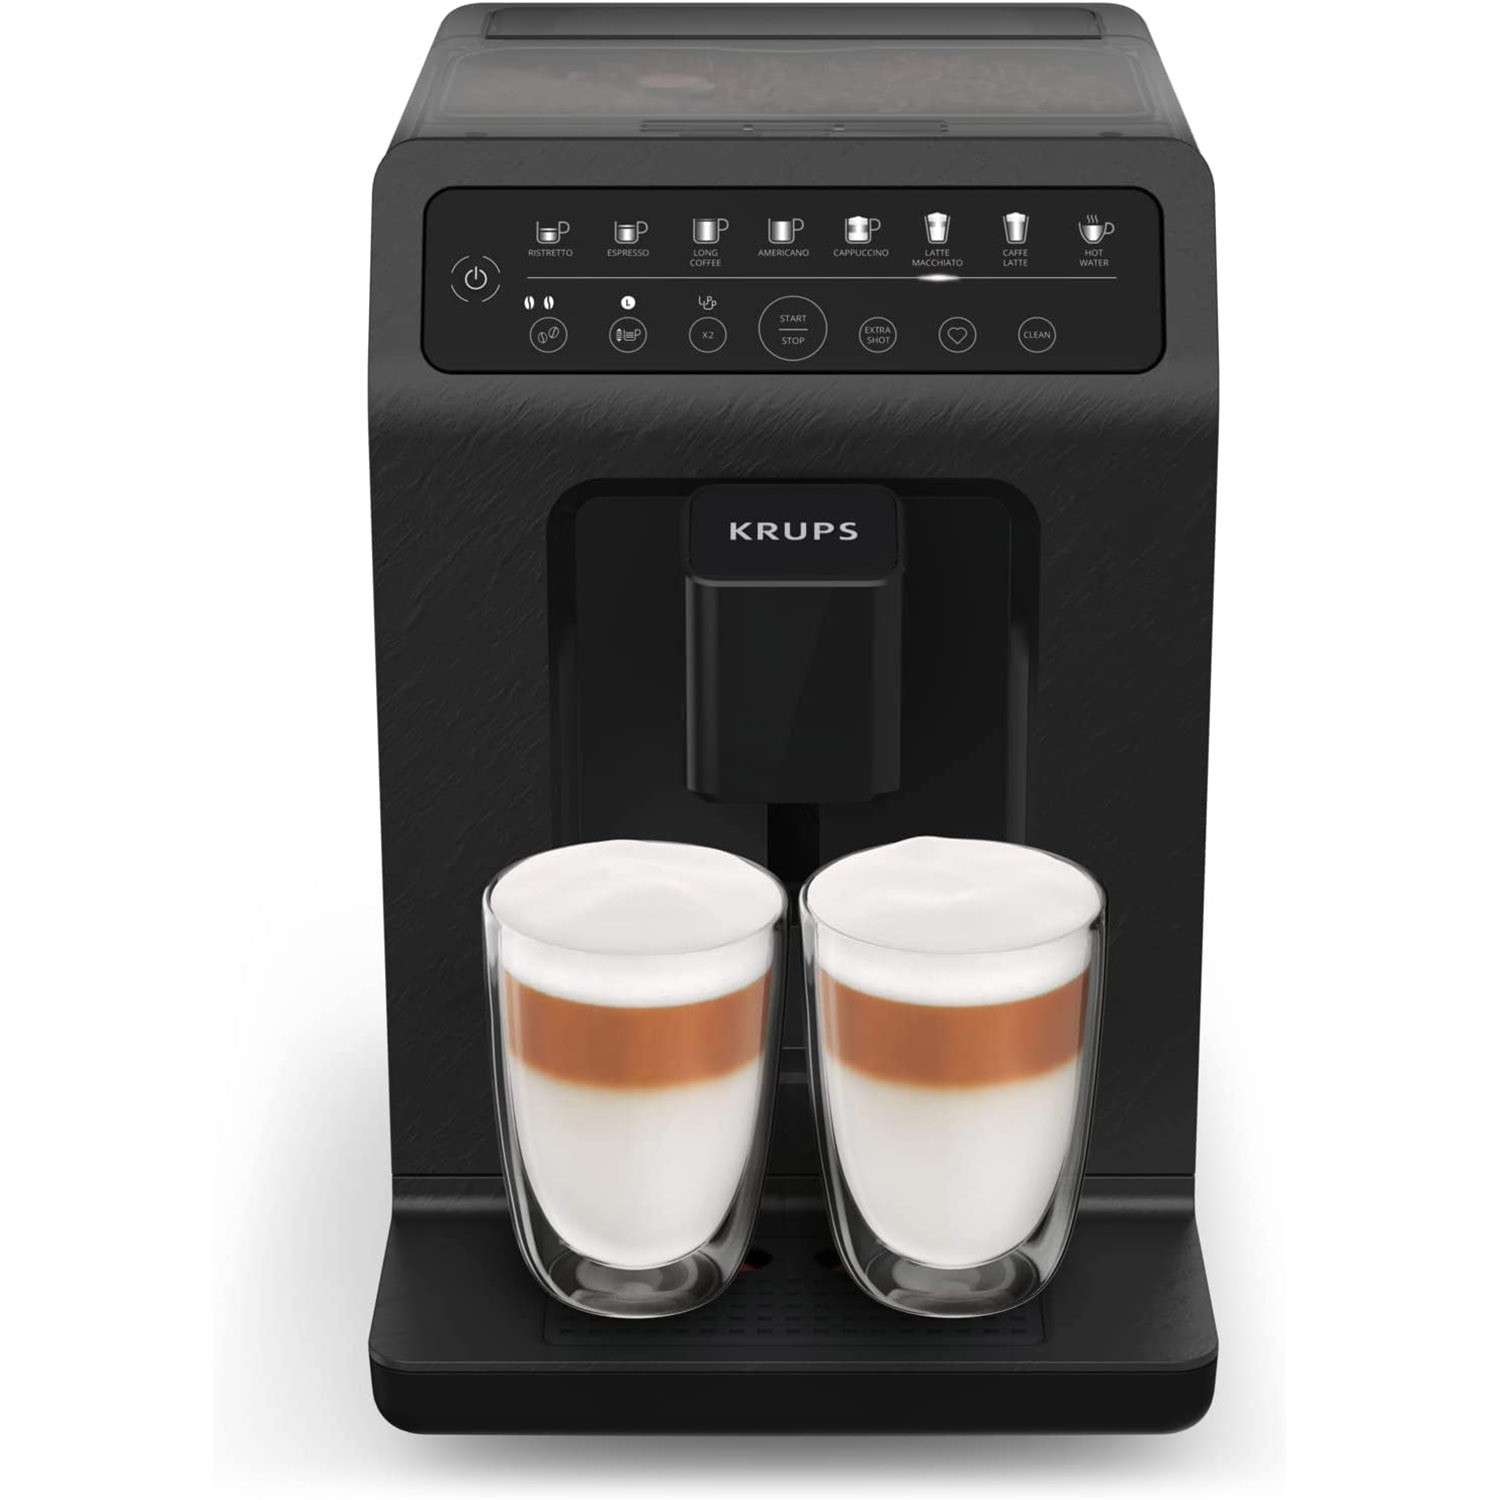 Krups Evidence Machine à café, Broyeur à grain, Cafetière expresso,  Cappuccino, Espresso, 15 boissons, 2 tasses simultanées, Pot à lait EA891810